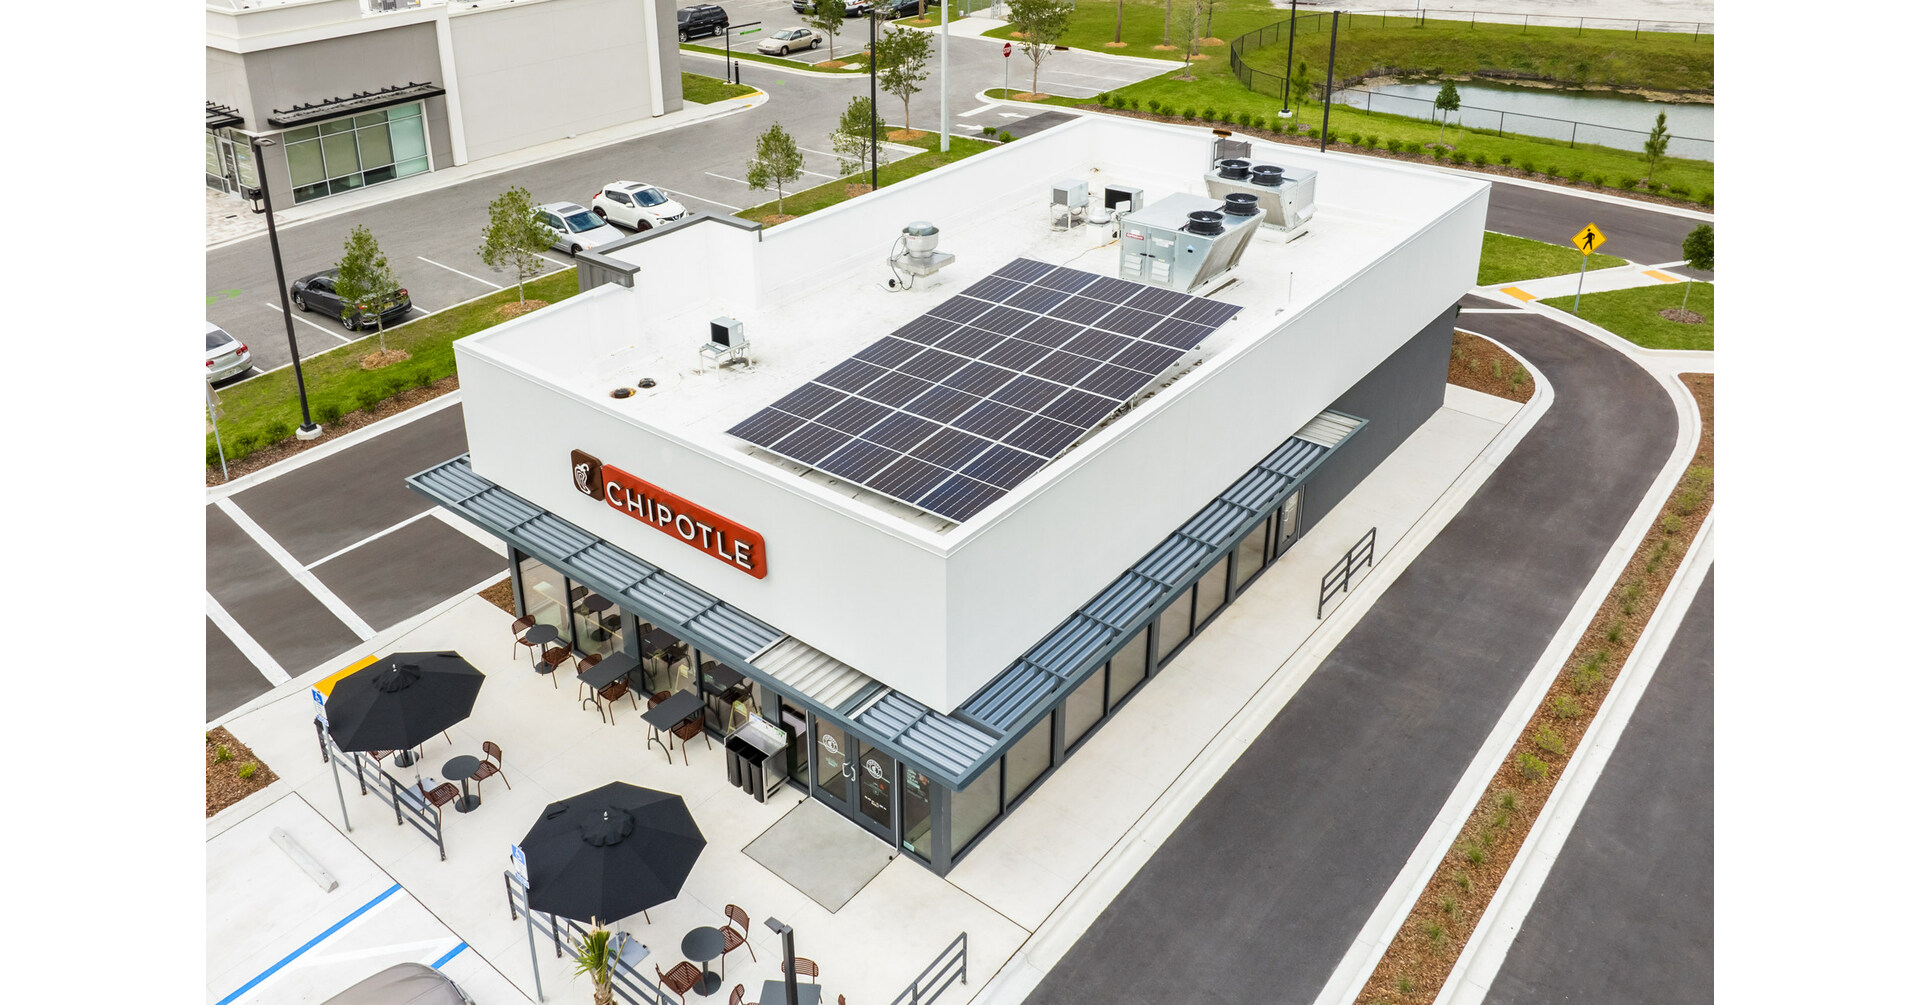 CHIPOTLE PILOTS diseña un nuevo restaurante responsable junto con una campaña de sostenibilidad